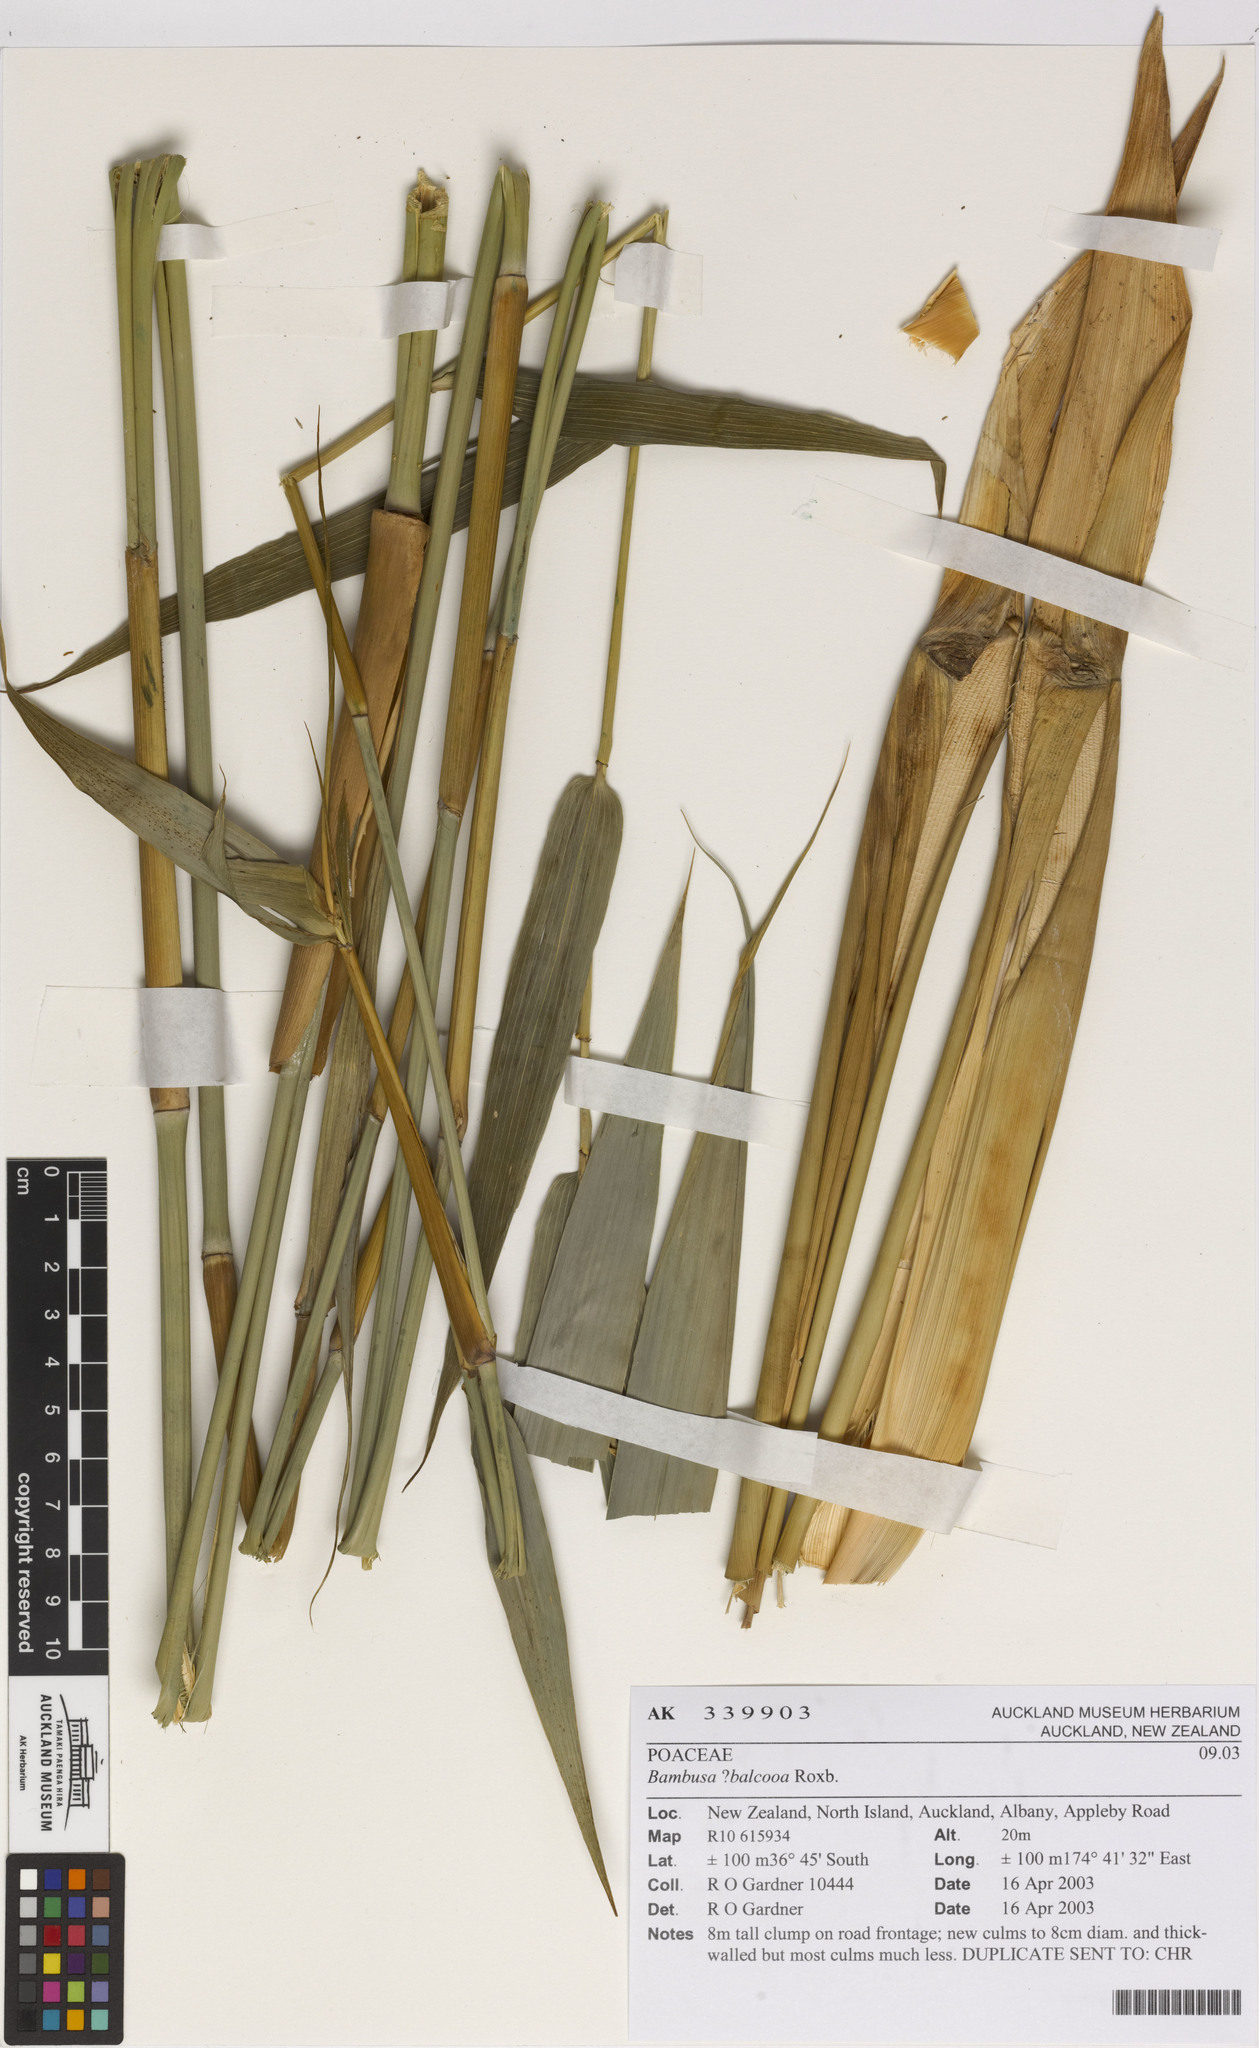 Bambusa balcooa - Female Bamboo